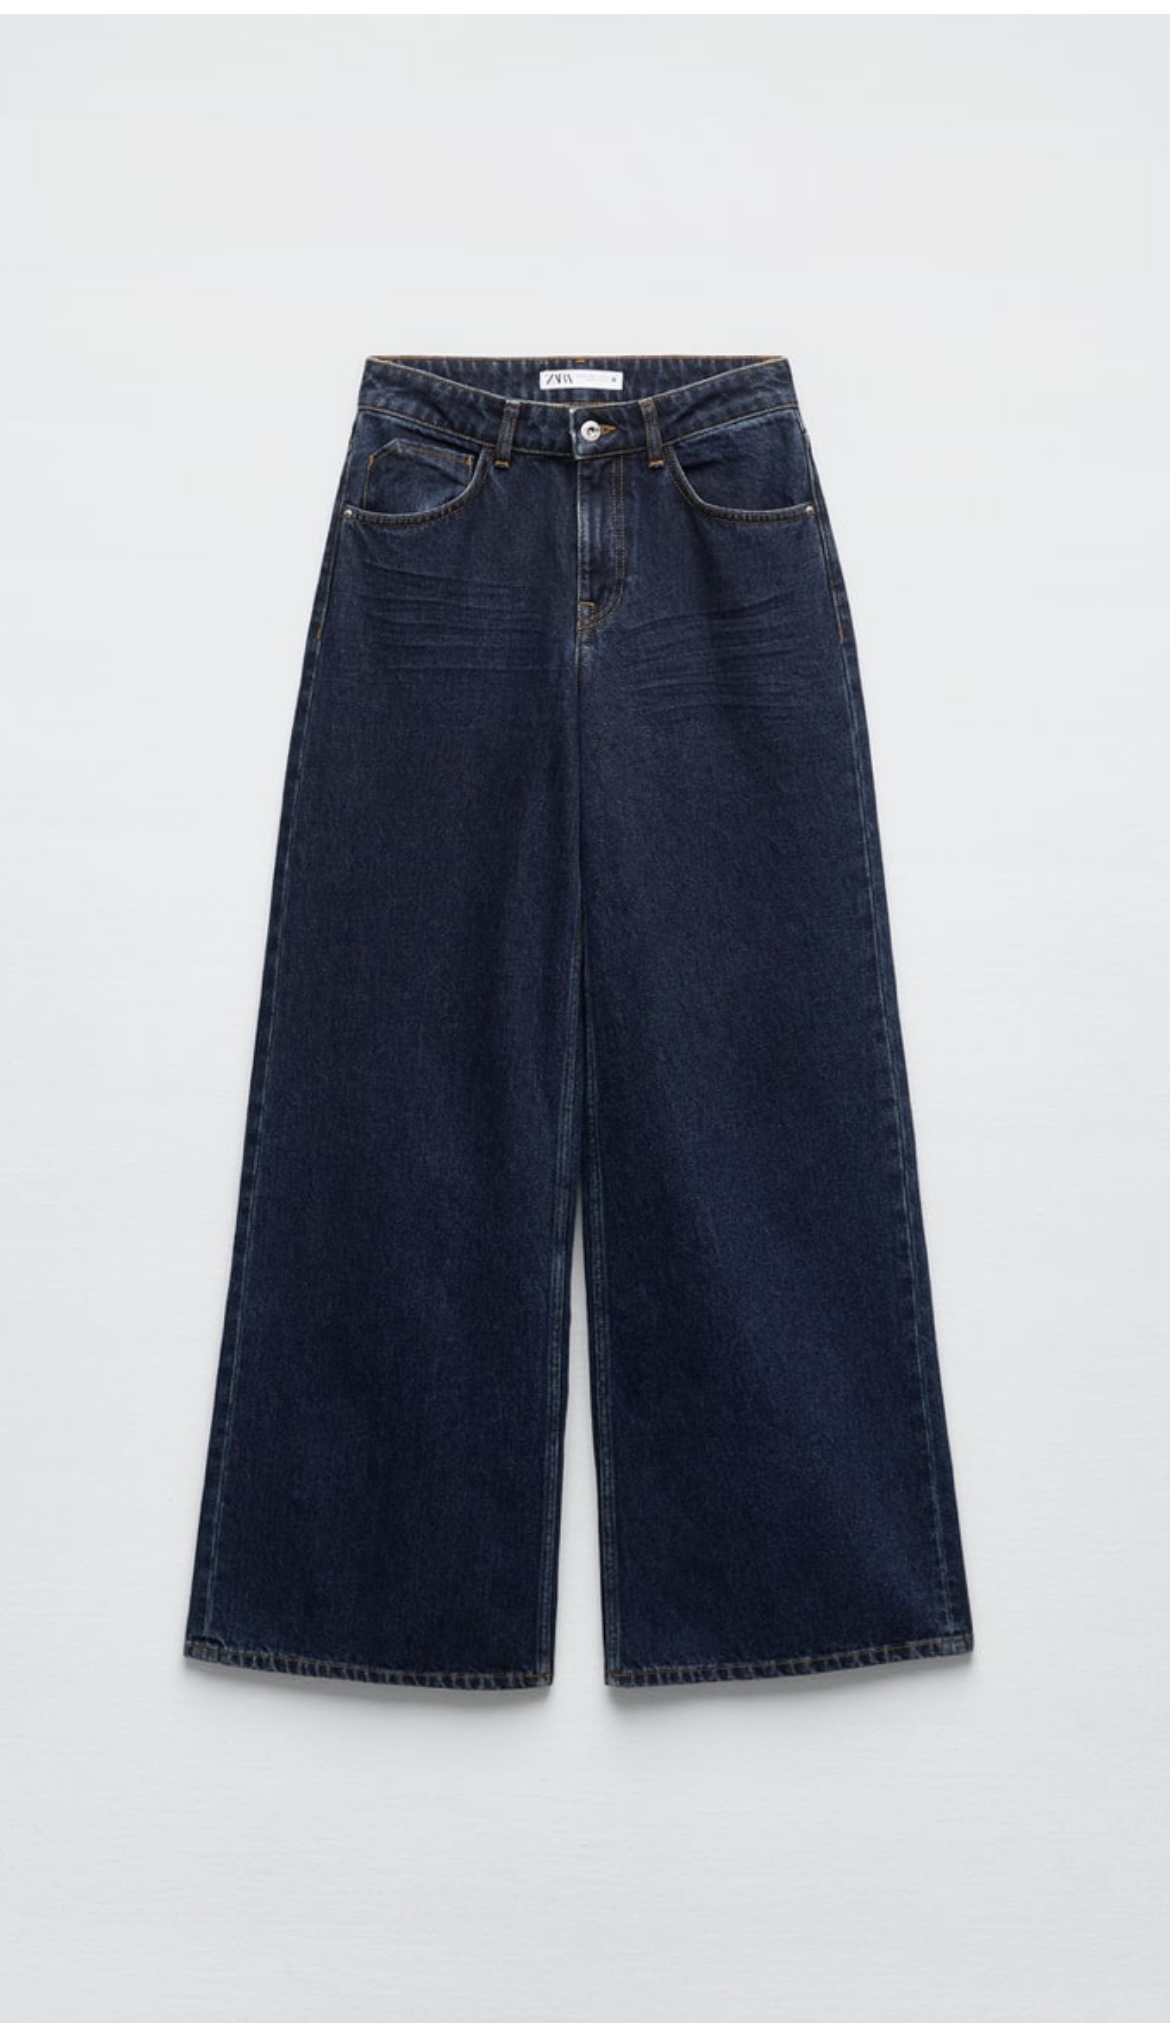 Pantalón de pernera ancha de Zara (29,95 euros).